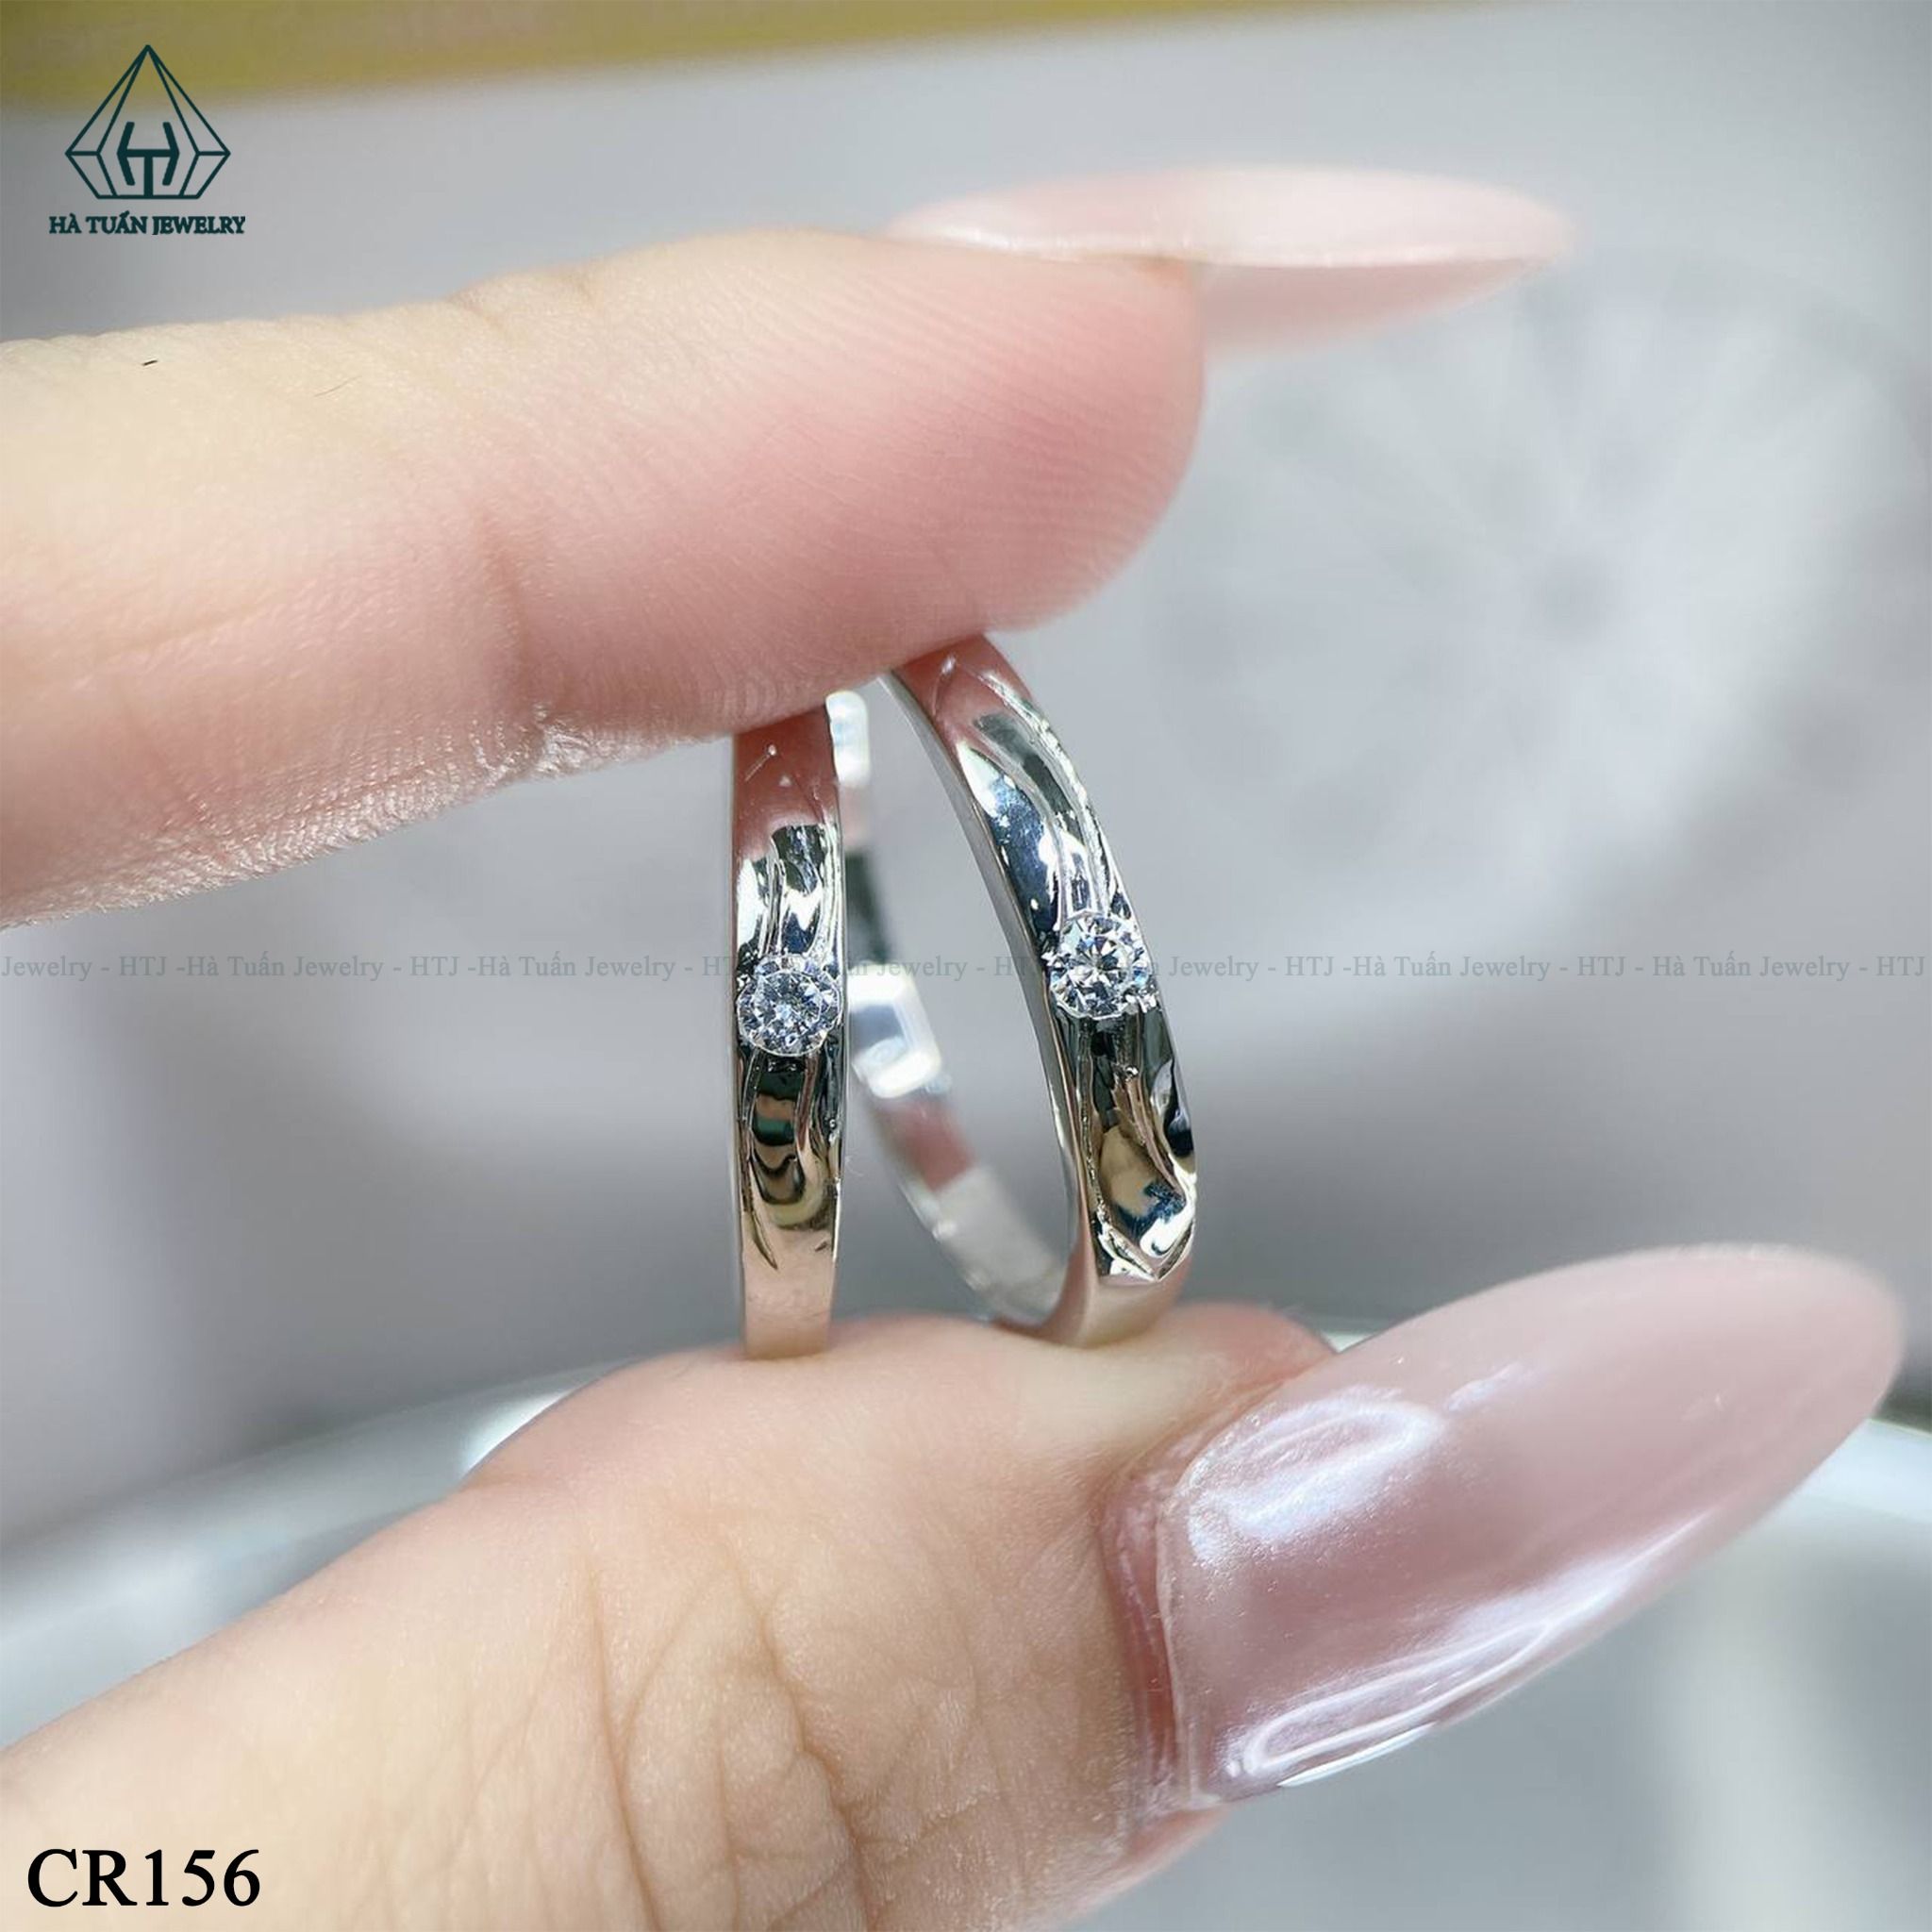  CR156 Nhẫn đôi 